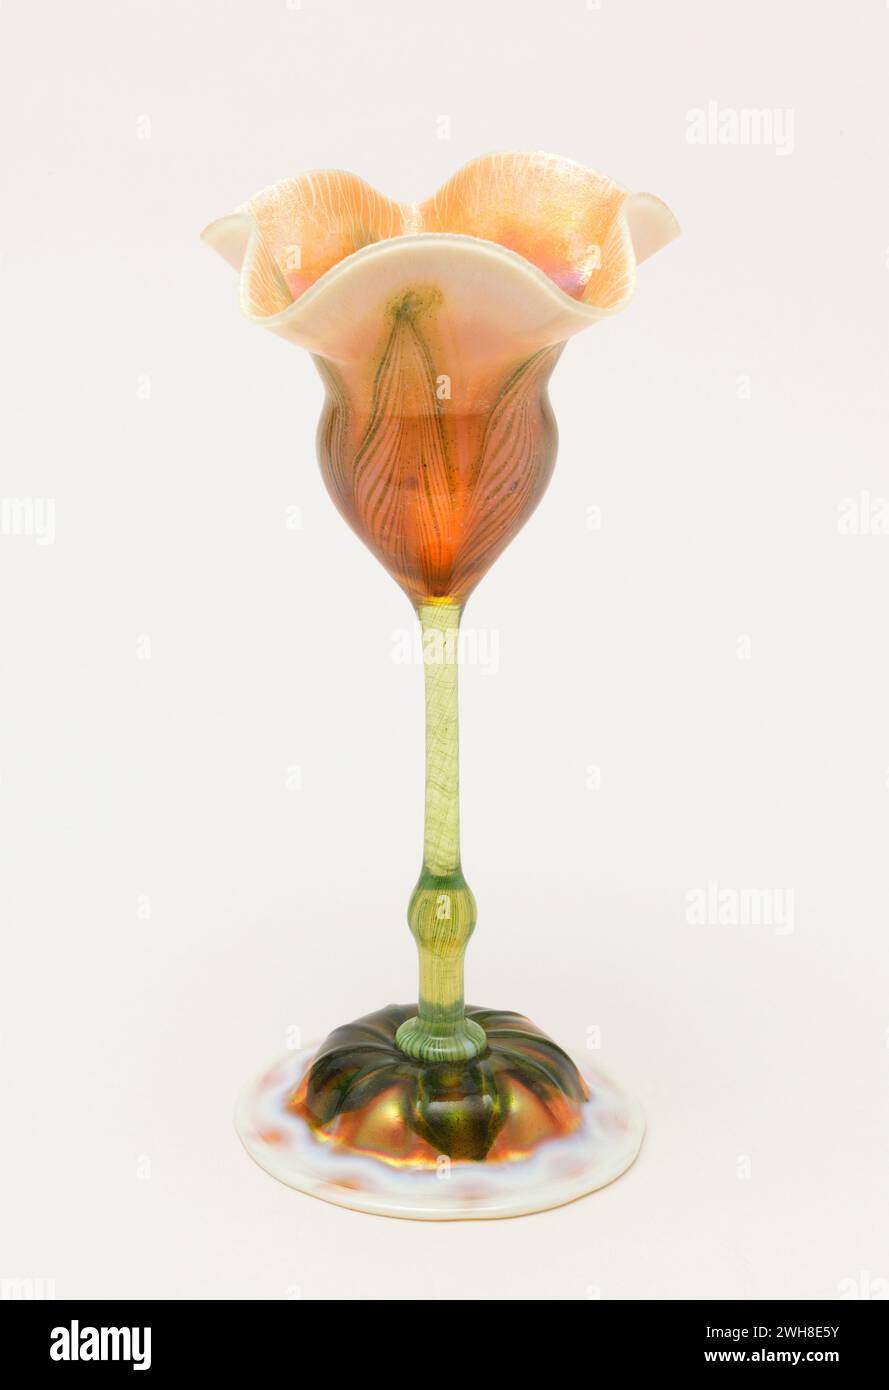 Louis Comfort Tiffany Blumenförmige Vase. Flache runde Basis, schmaler, geknöpfter Stiel und abfackelnde „Tulpe“ – Oberseite aus Opal- und Bernsteinglas, mit grünen Sprenkeln und Streifen an Basis und Stiel, die oben blumenförmige Adern bilden. Stockfoto